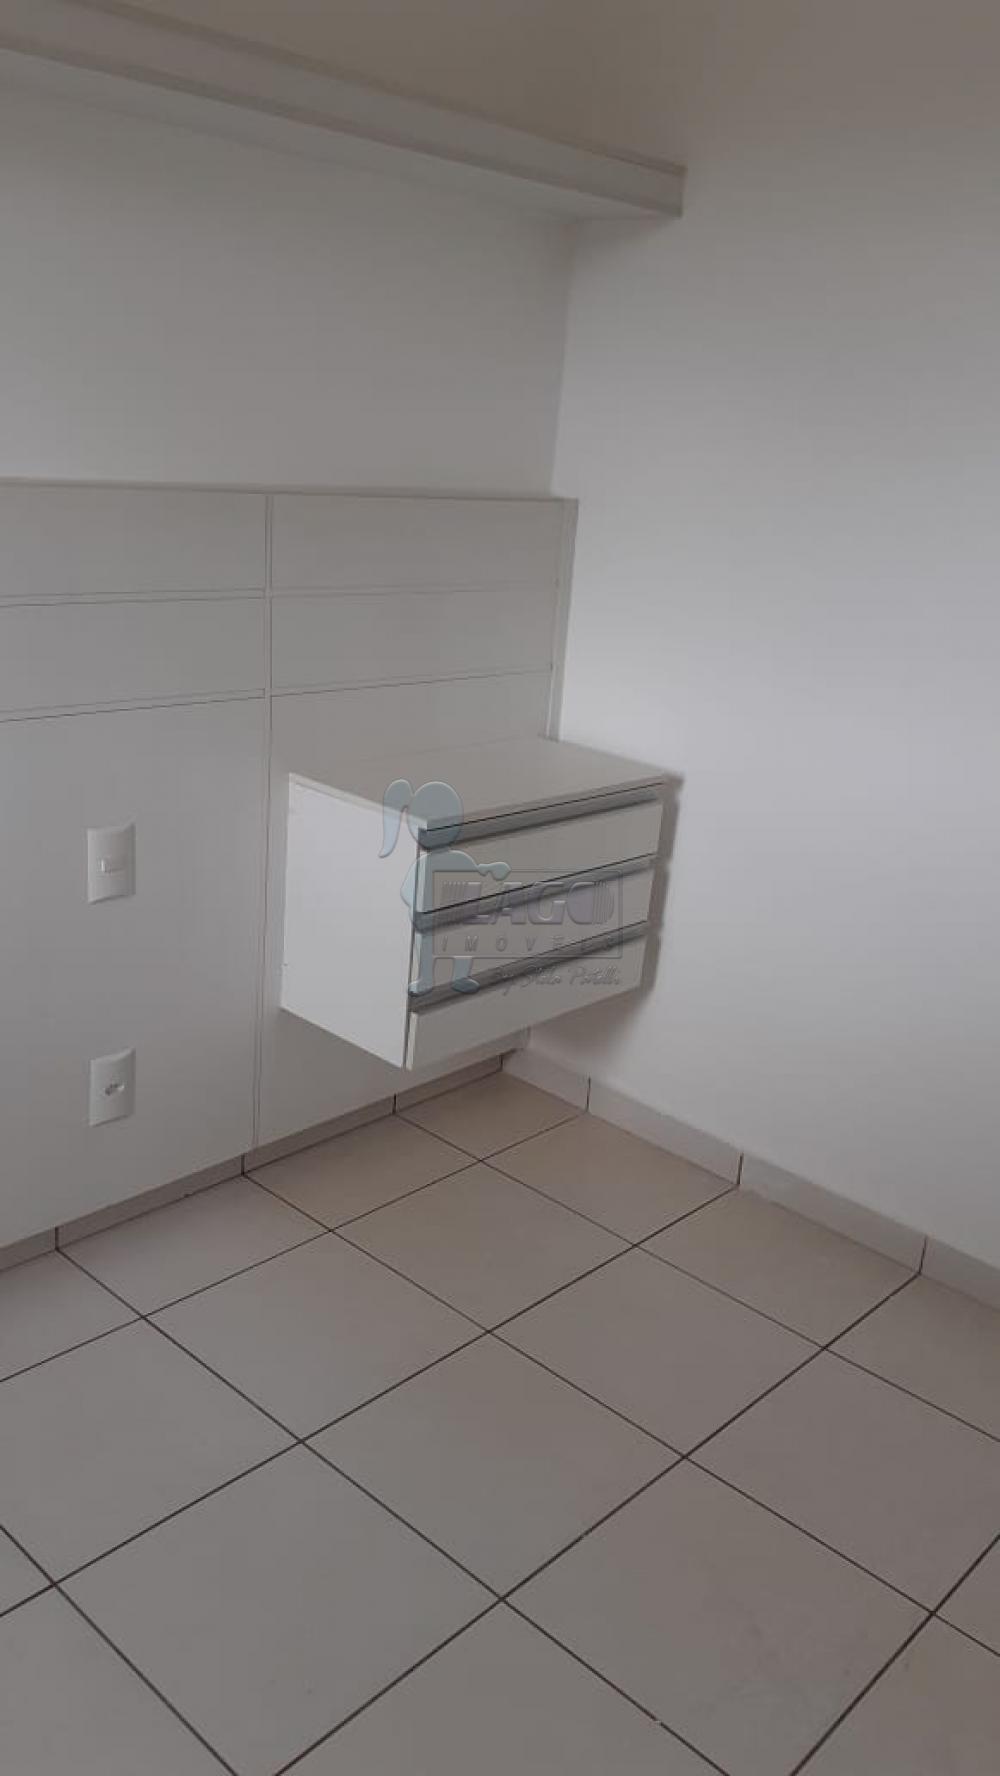 Comprar Apartamentos / Padrão em Ribeirão Preto R$ 430.000,00 - Foto 10